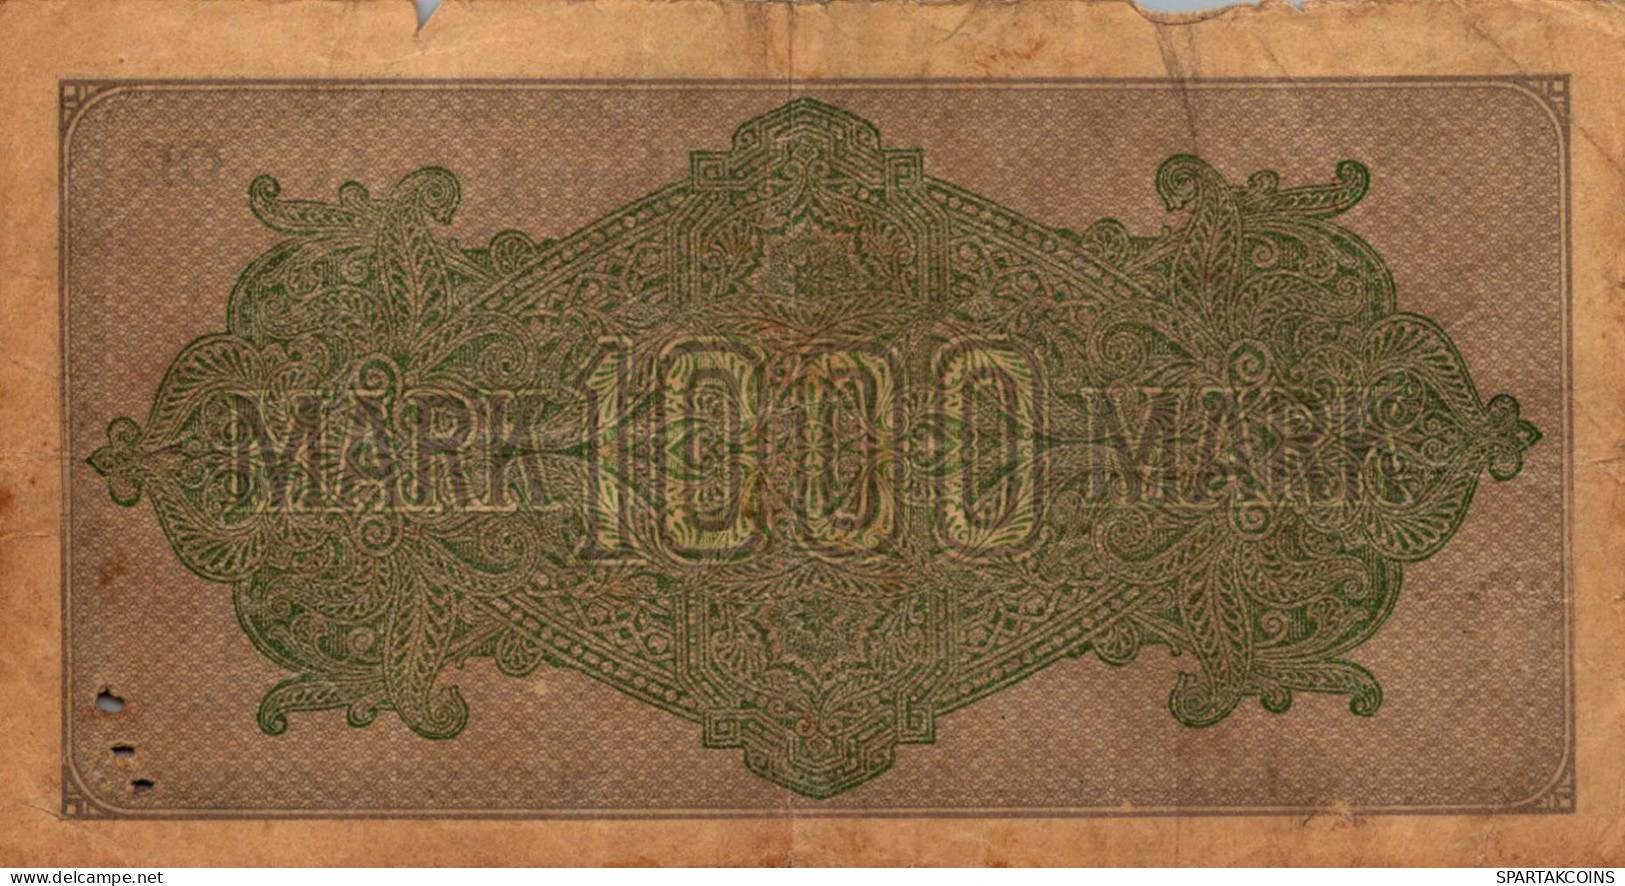 1000 MARK 1922 Stadt BERLIN DEUTSCHLAND Papiergeld Banknote #PK821 - [11] Local Banknote Issues